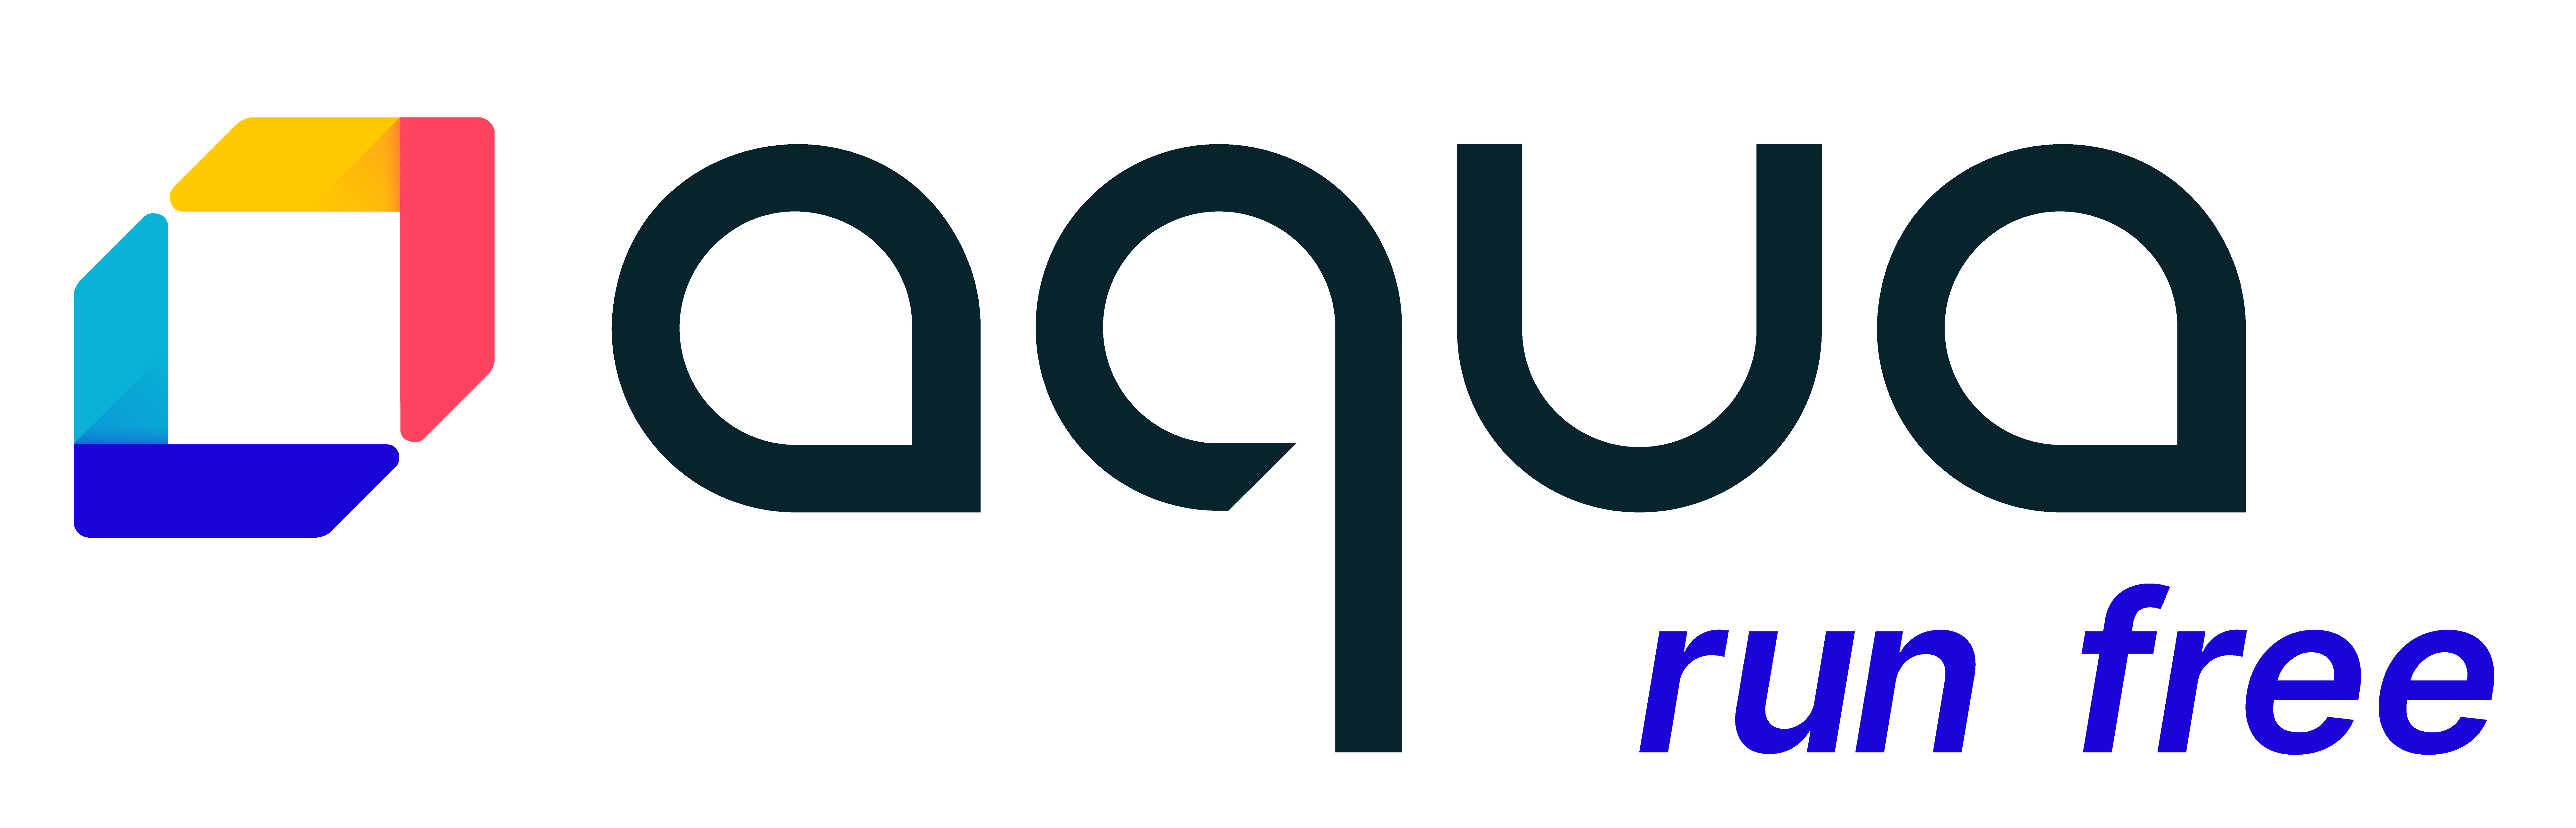 aqua logo fullcolor